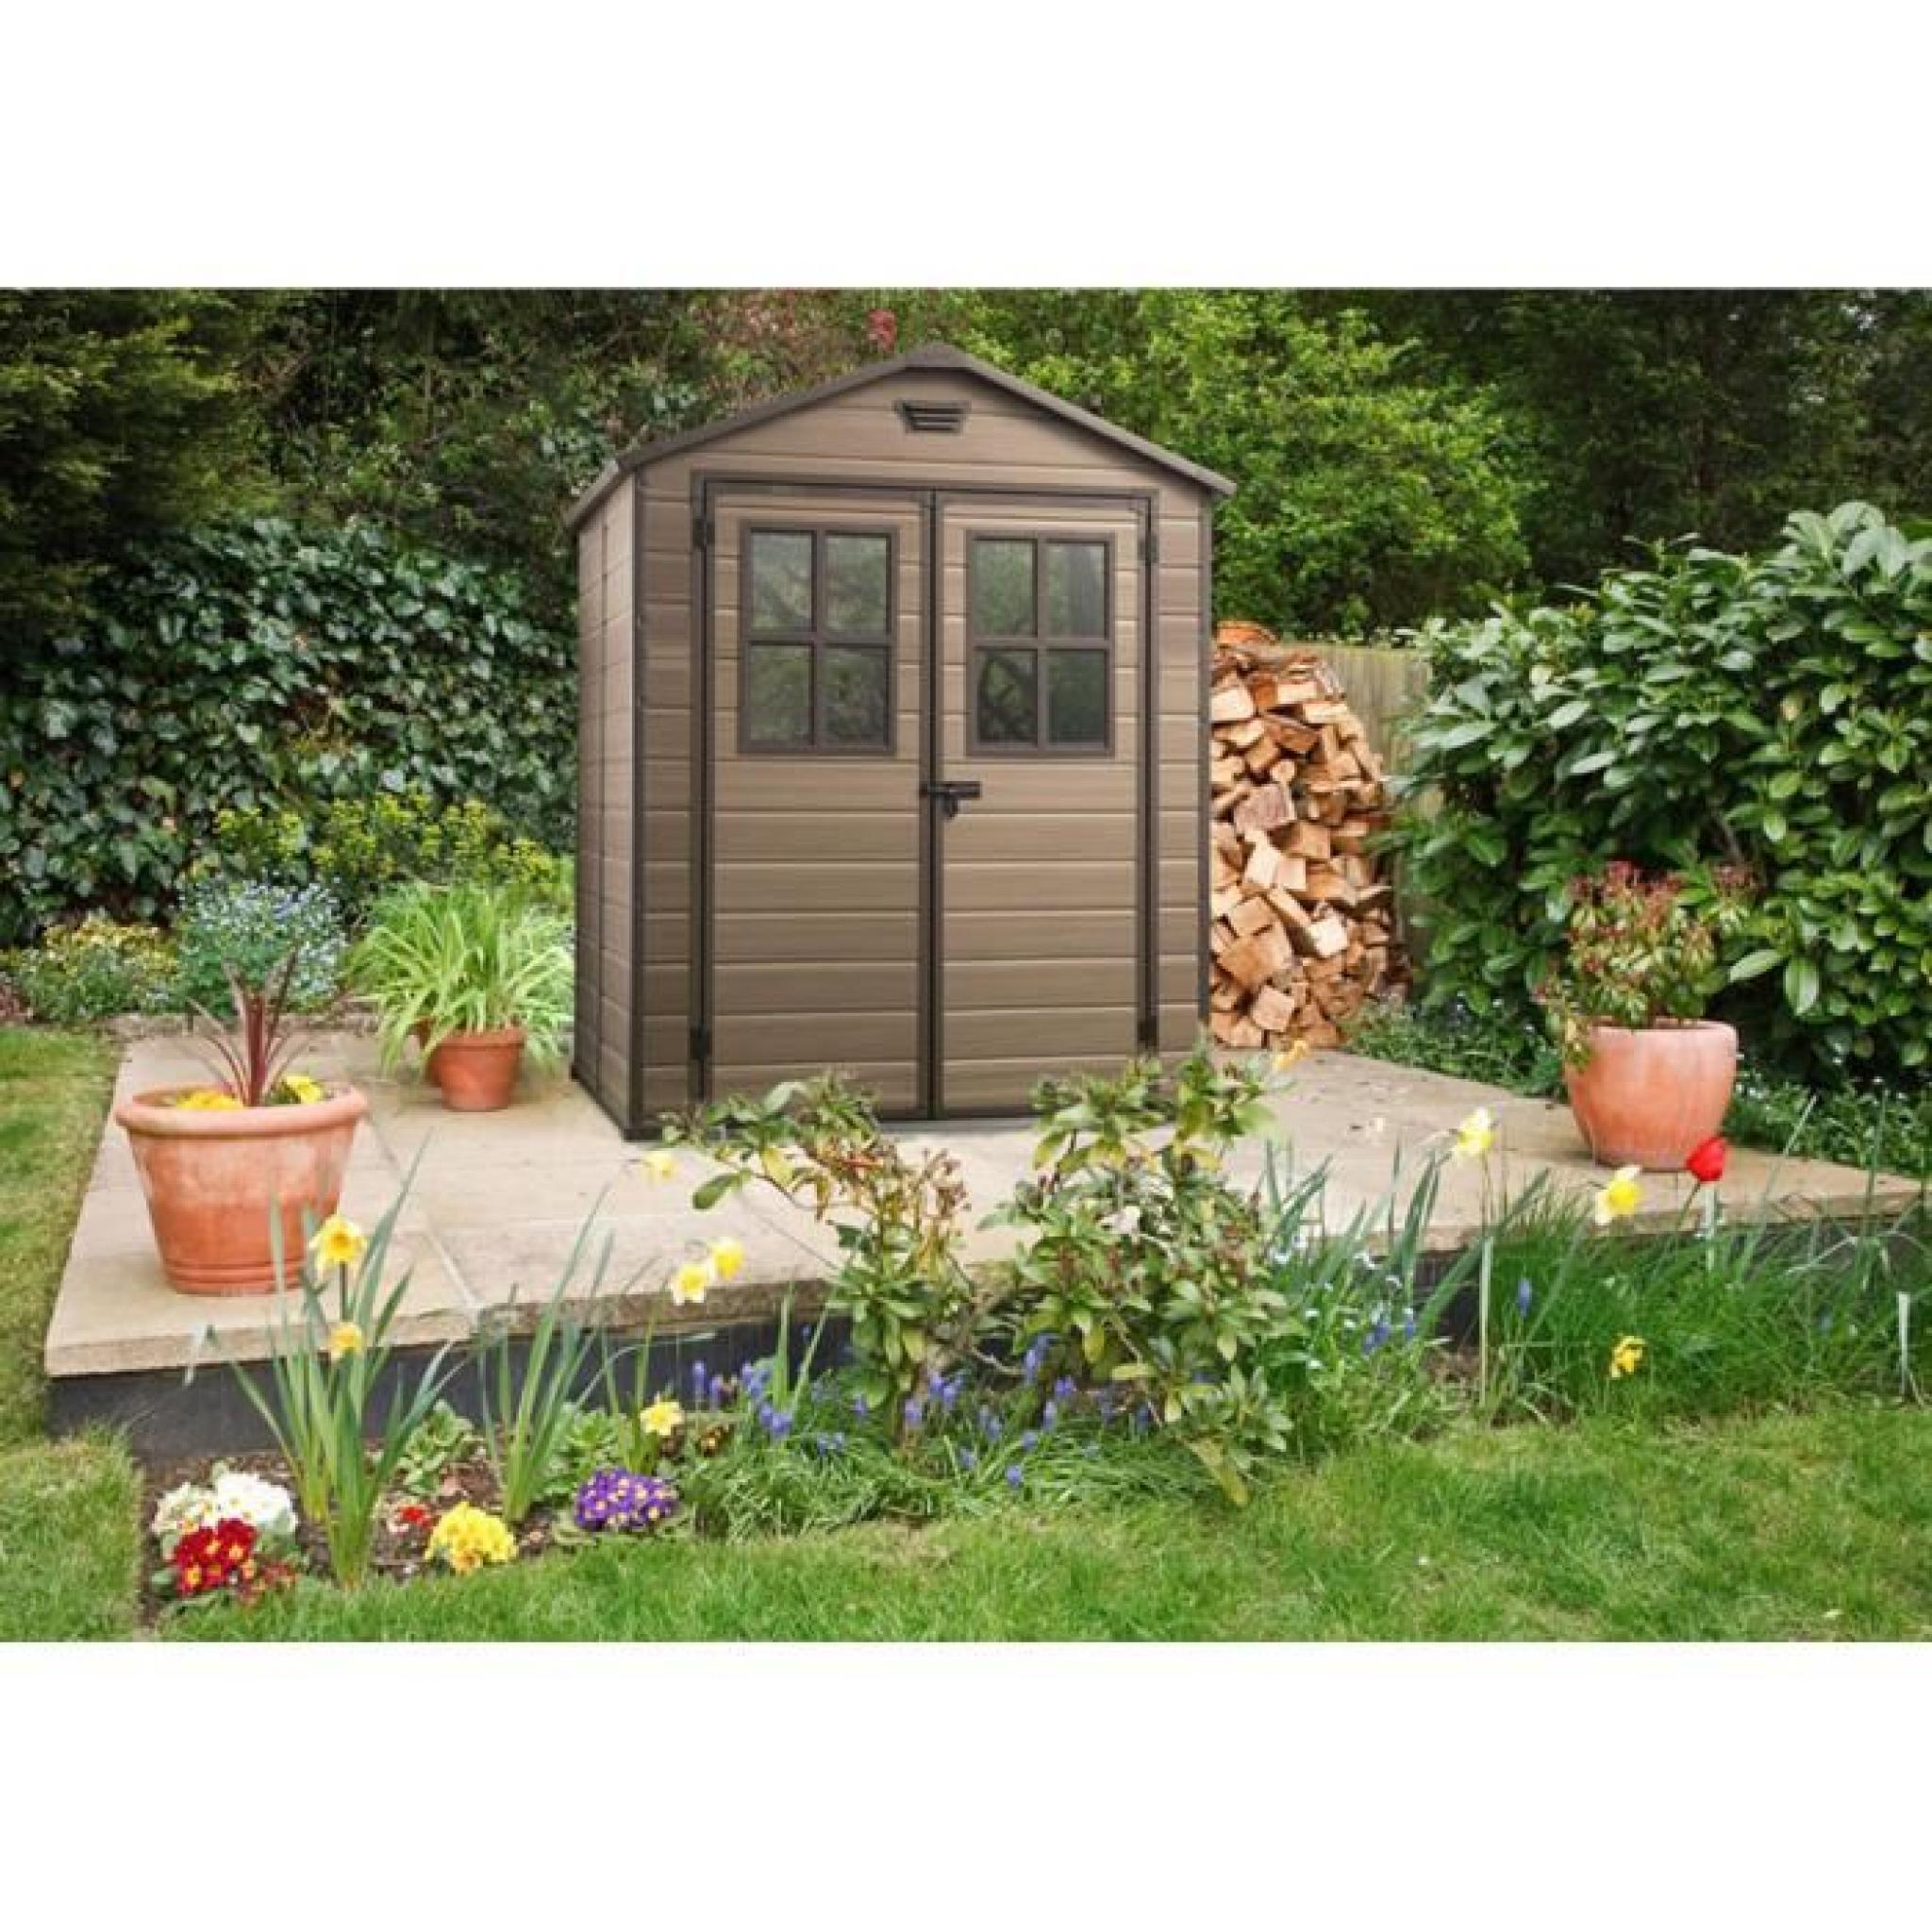 Abri de jardin robuste en résine aspect bois rustique coloris marron, 185 x 152 x 226 cm pas cher